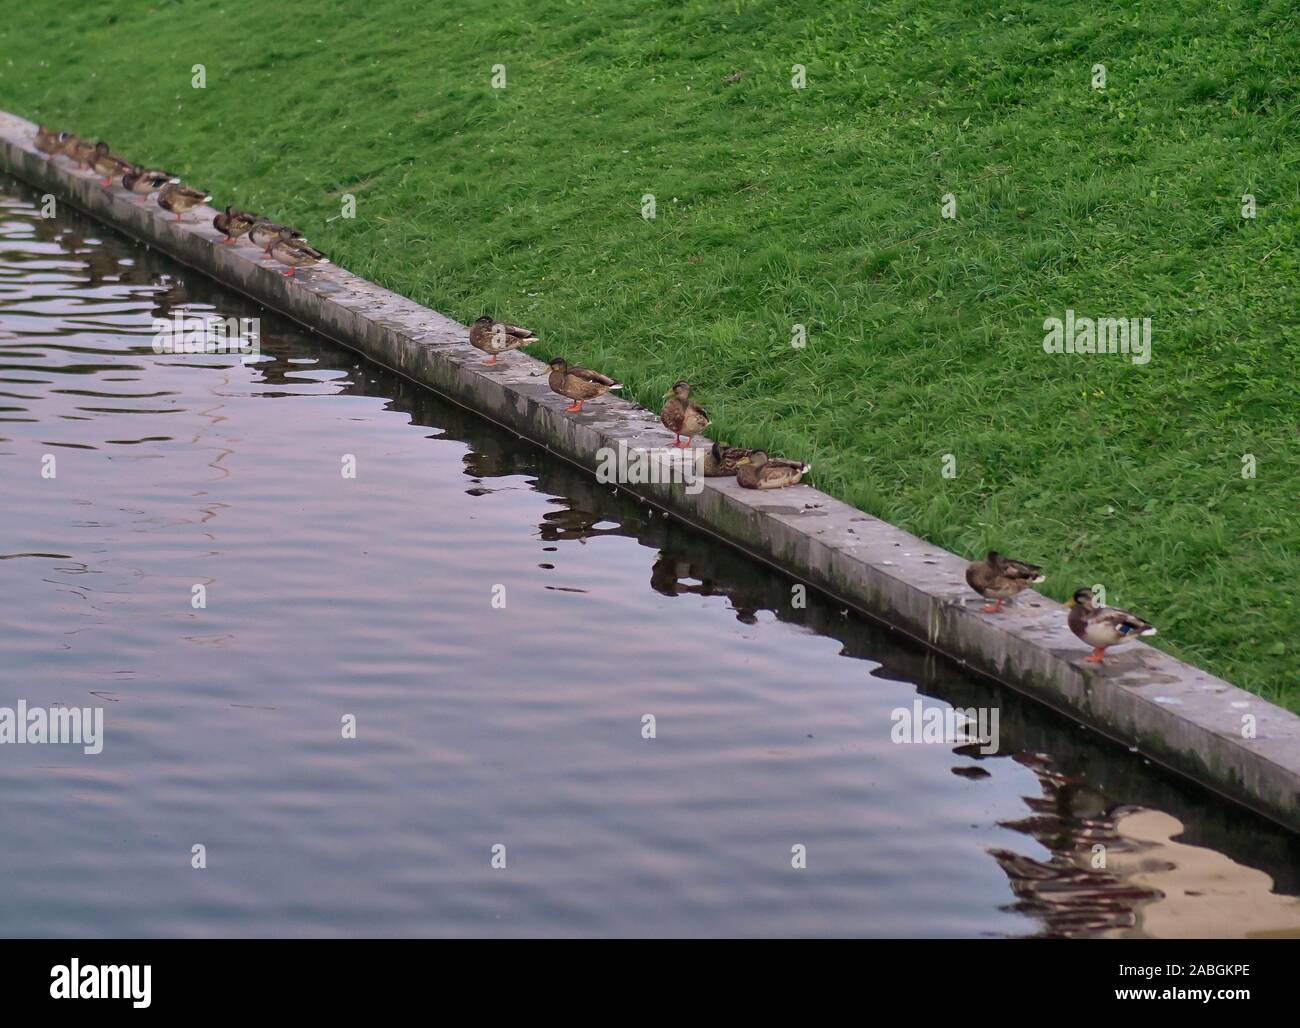 La naturaleza del parque de la ciudad en verano, patos silvestres sentarse en un bordillo de piedra en el estanque Foto de stock